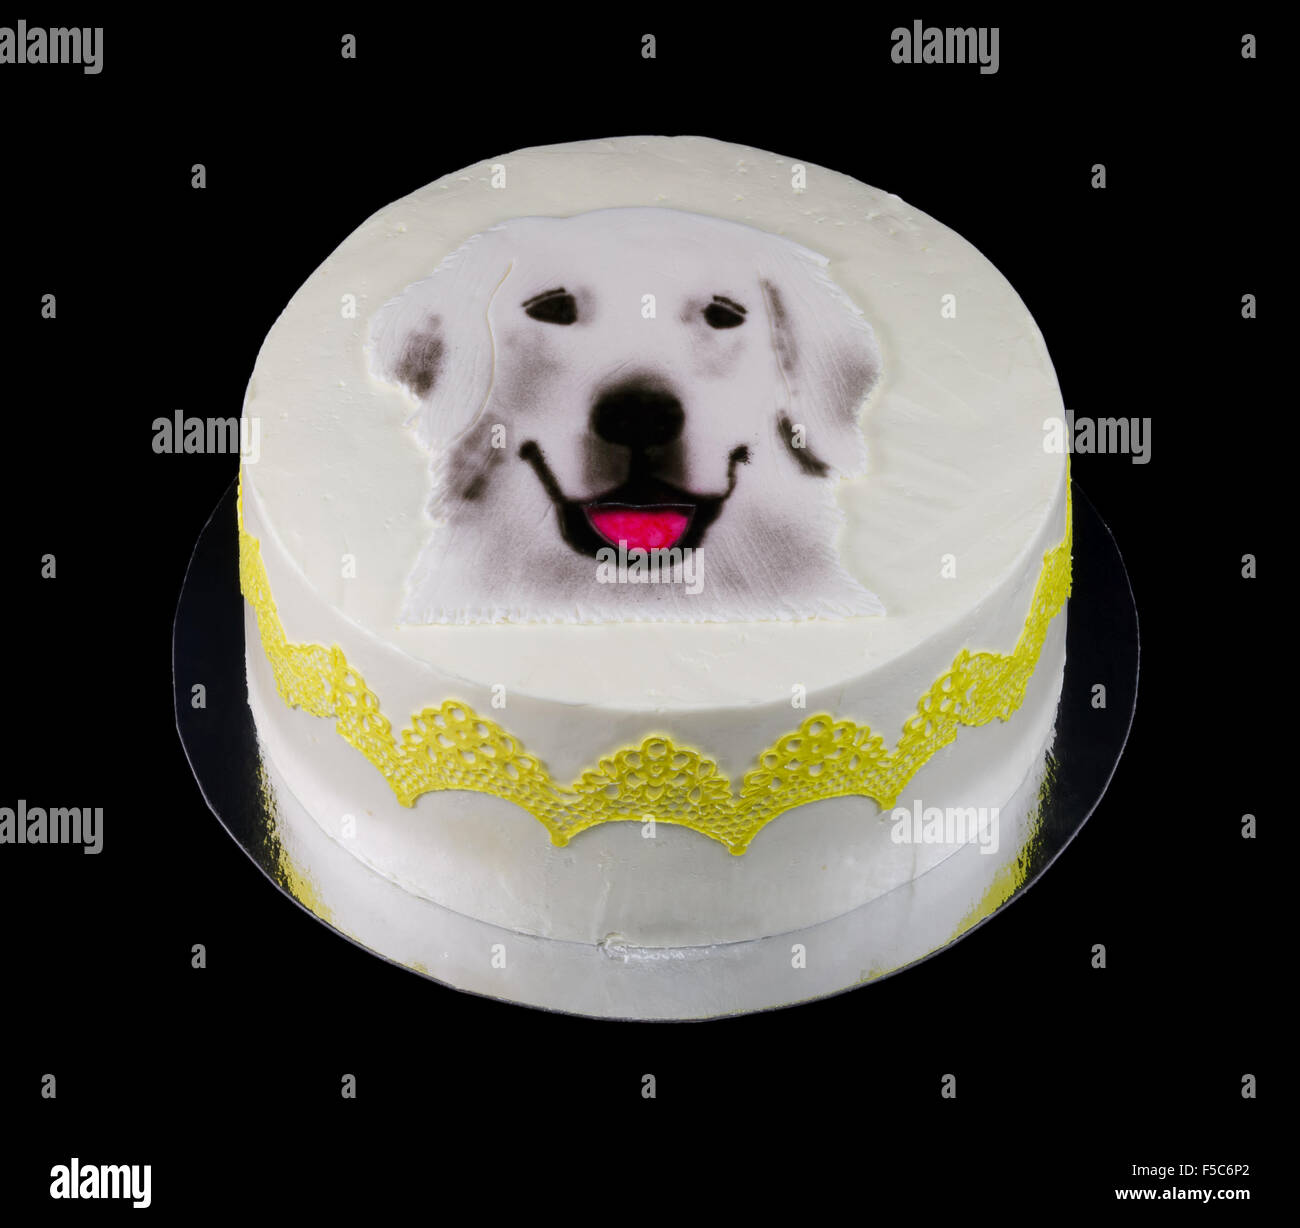 Una torta bianca decorata con una faccia del cane Foto stock - Alamy